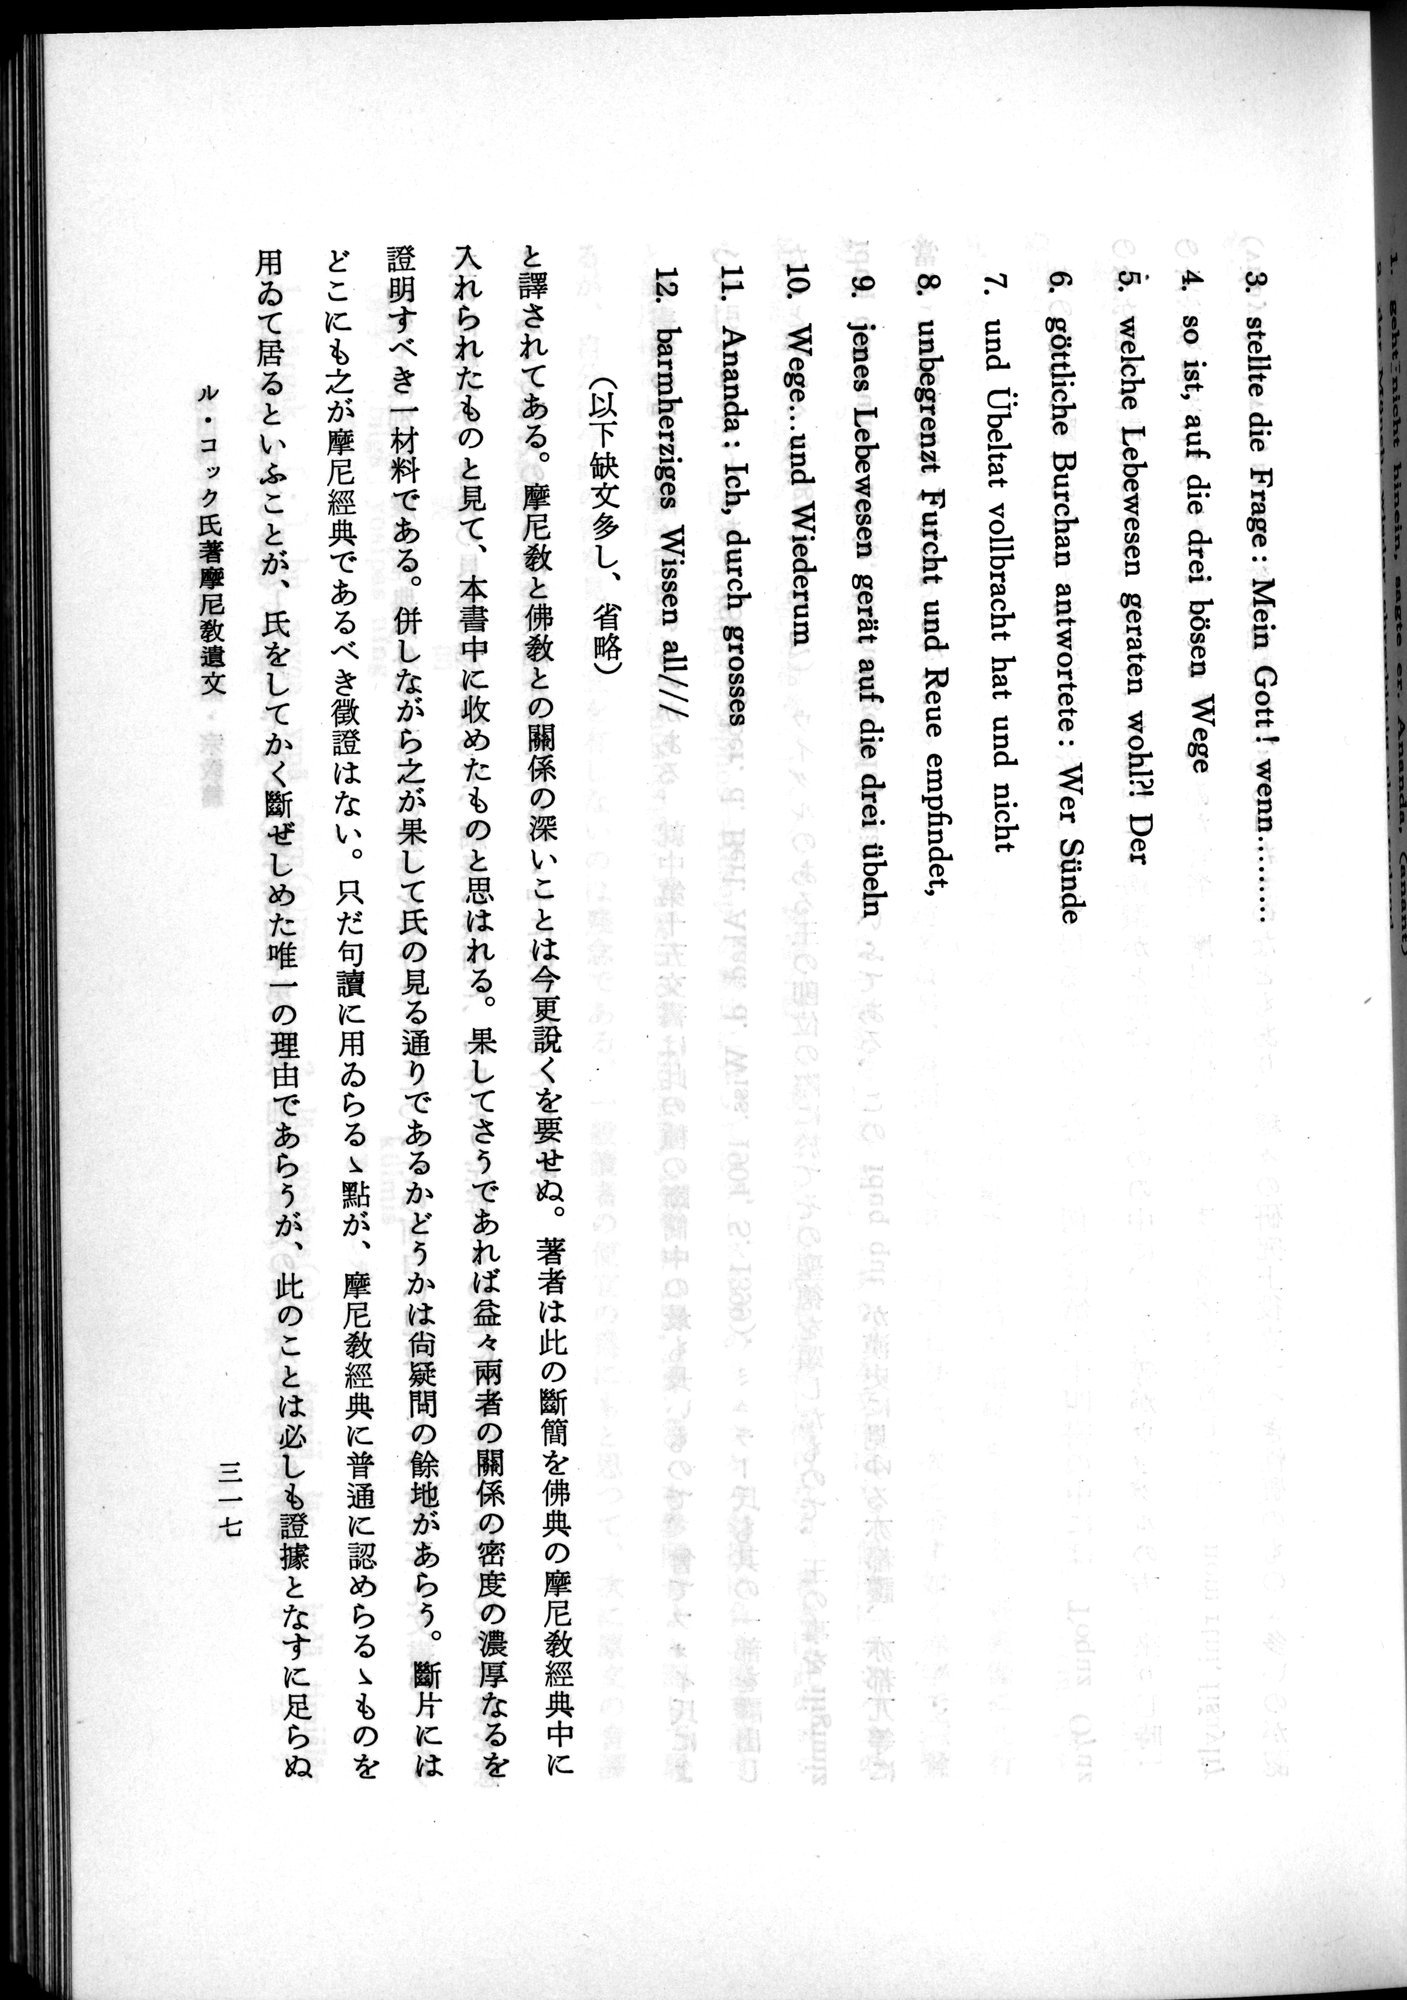 羽田博士史学論文集 : vol.2 / Page 379 (Grayscale High Resolution Image)